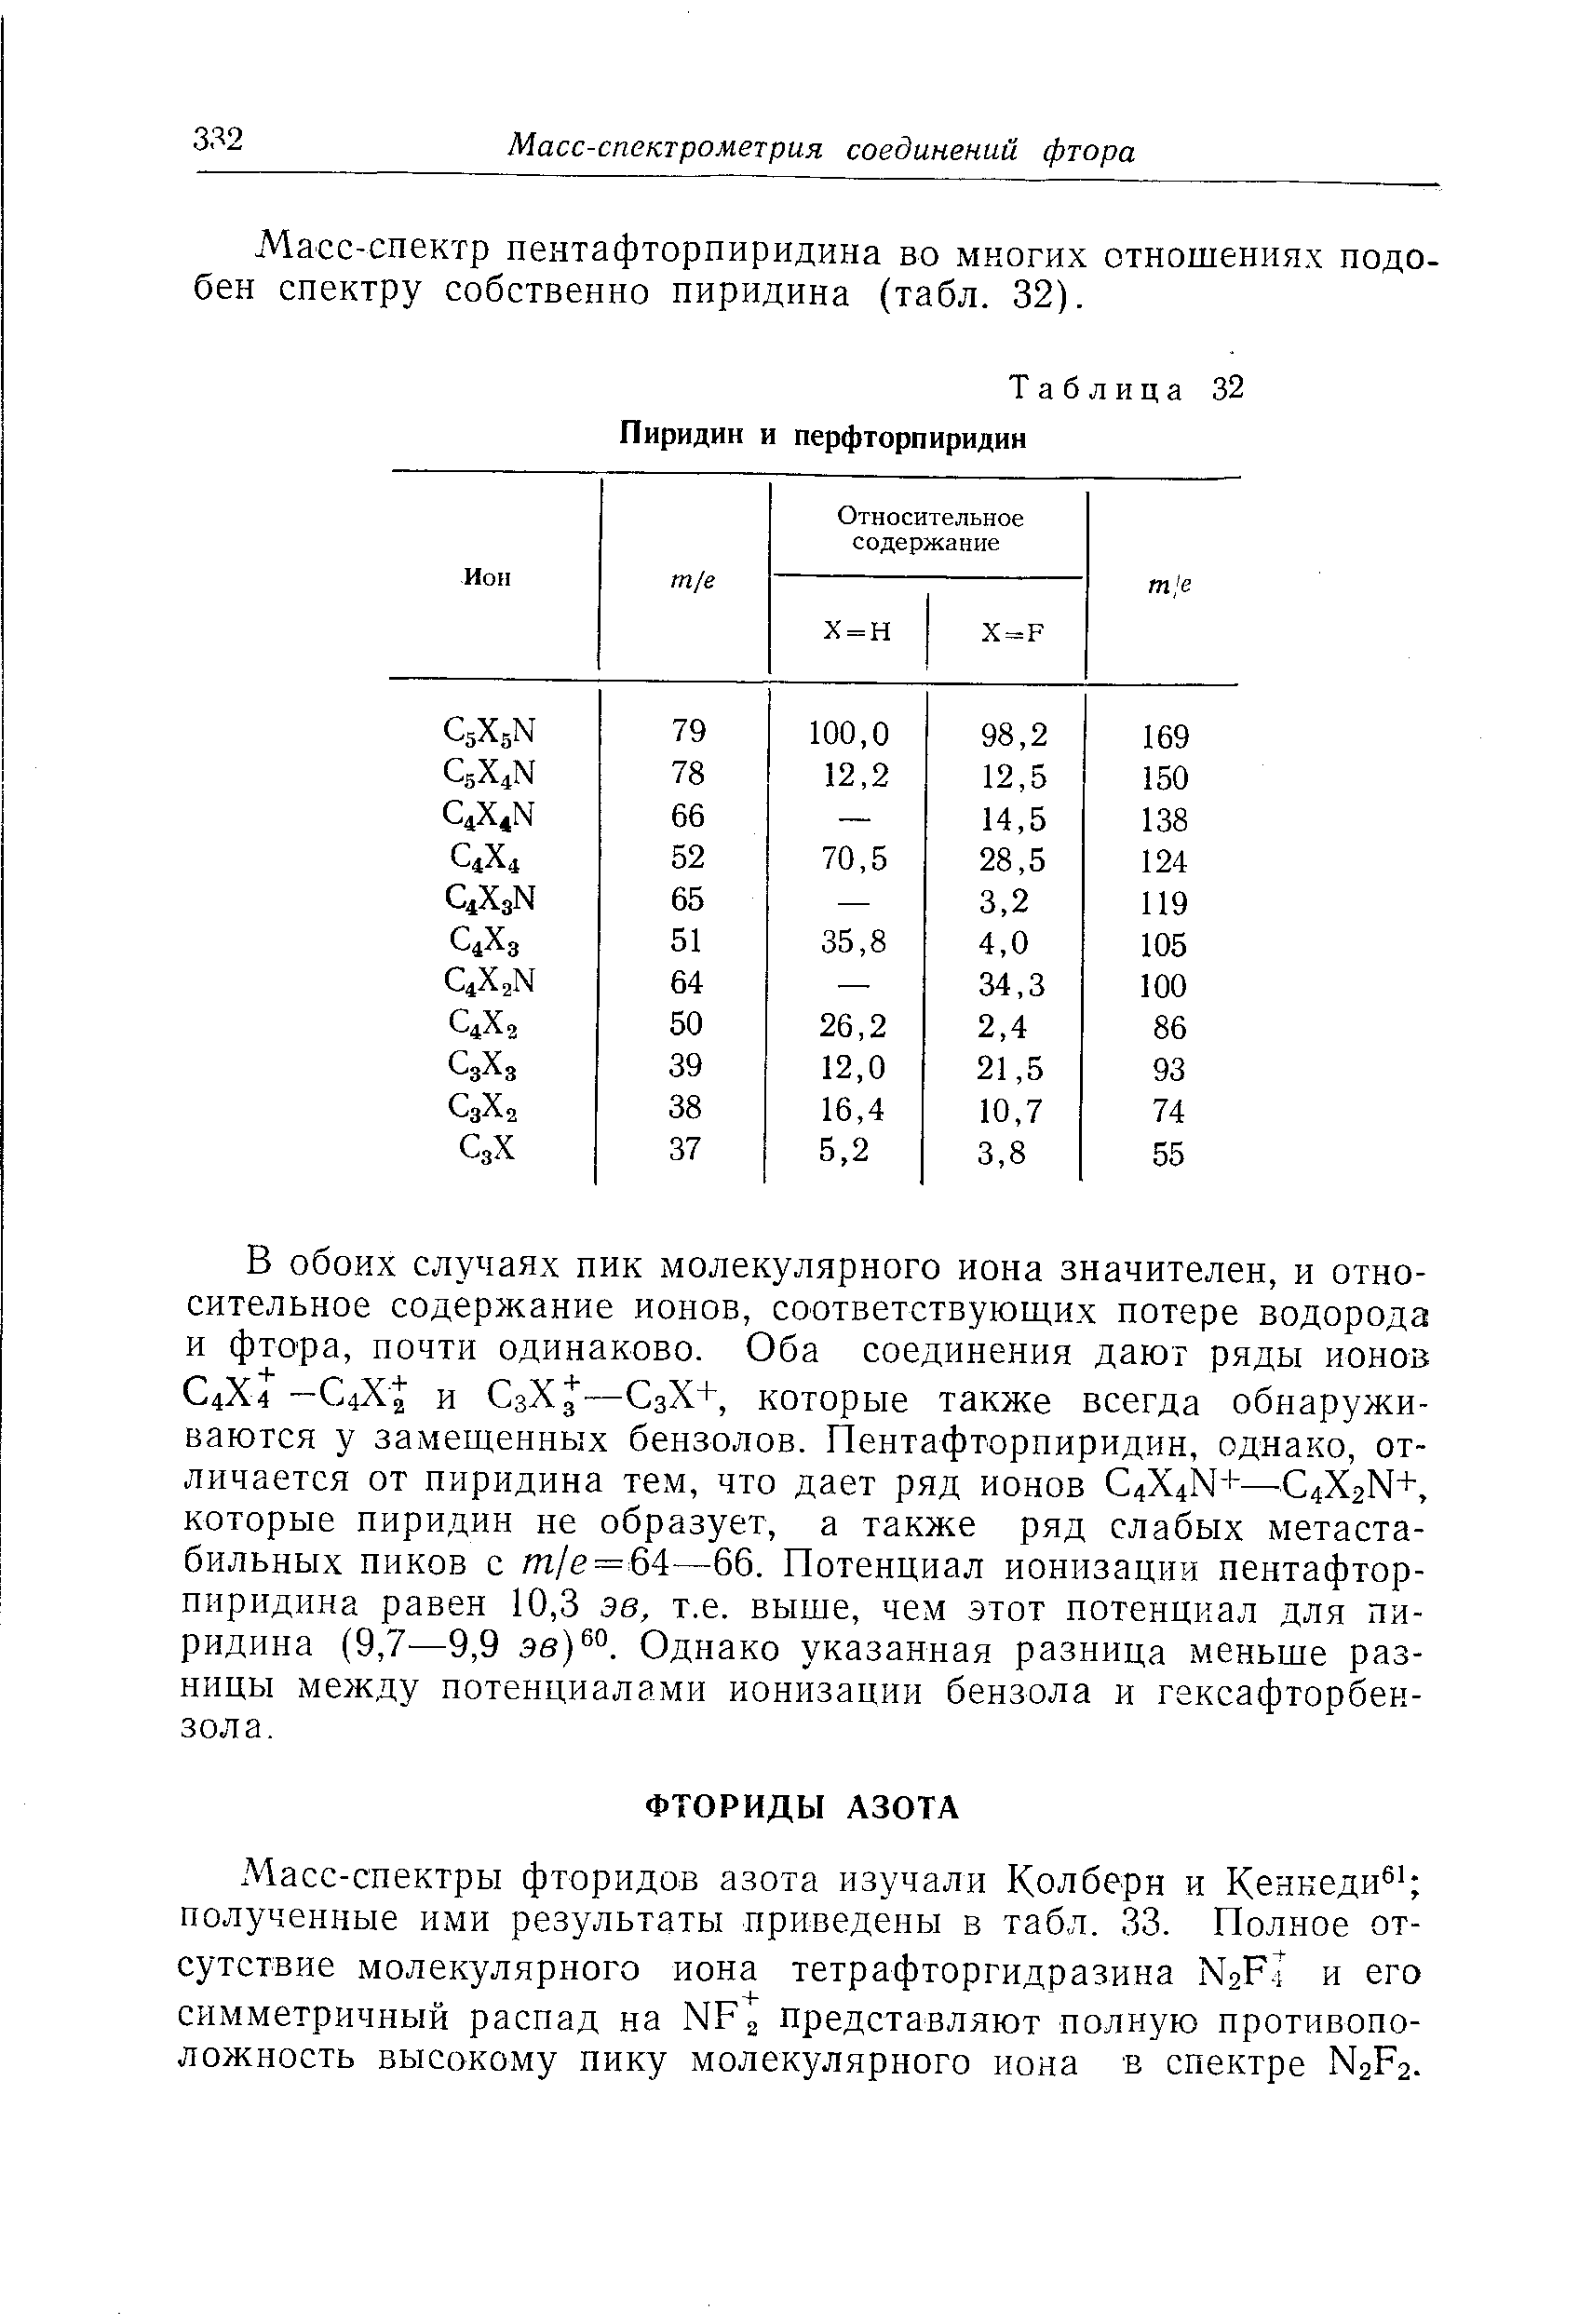 Масс-спектр пентафторпиридина во многих отношениях подобен спектру собственно пиридина (табл. 32).